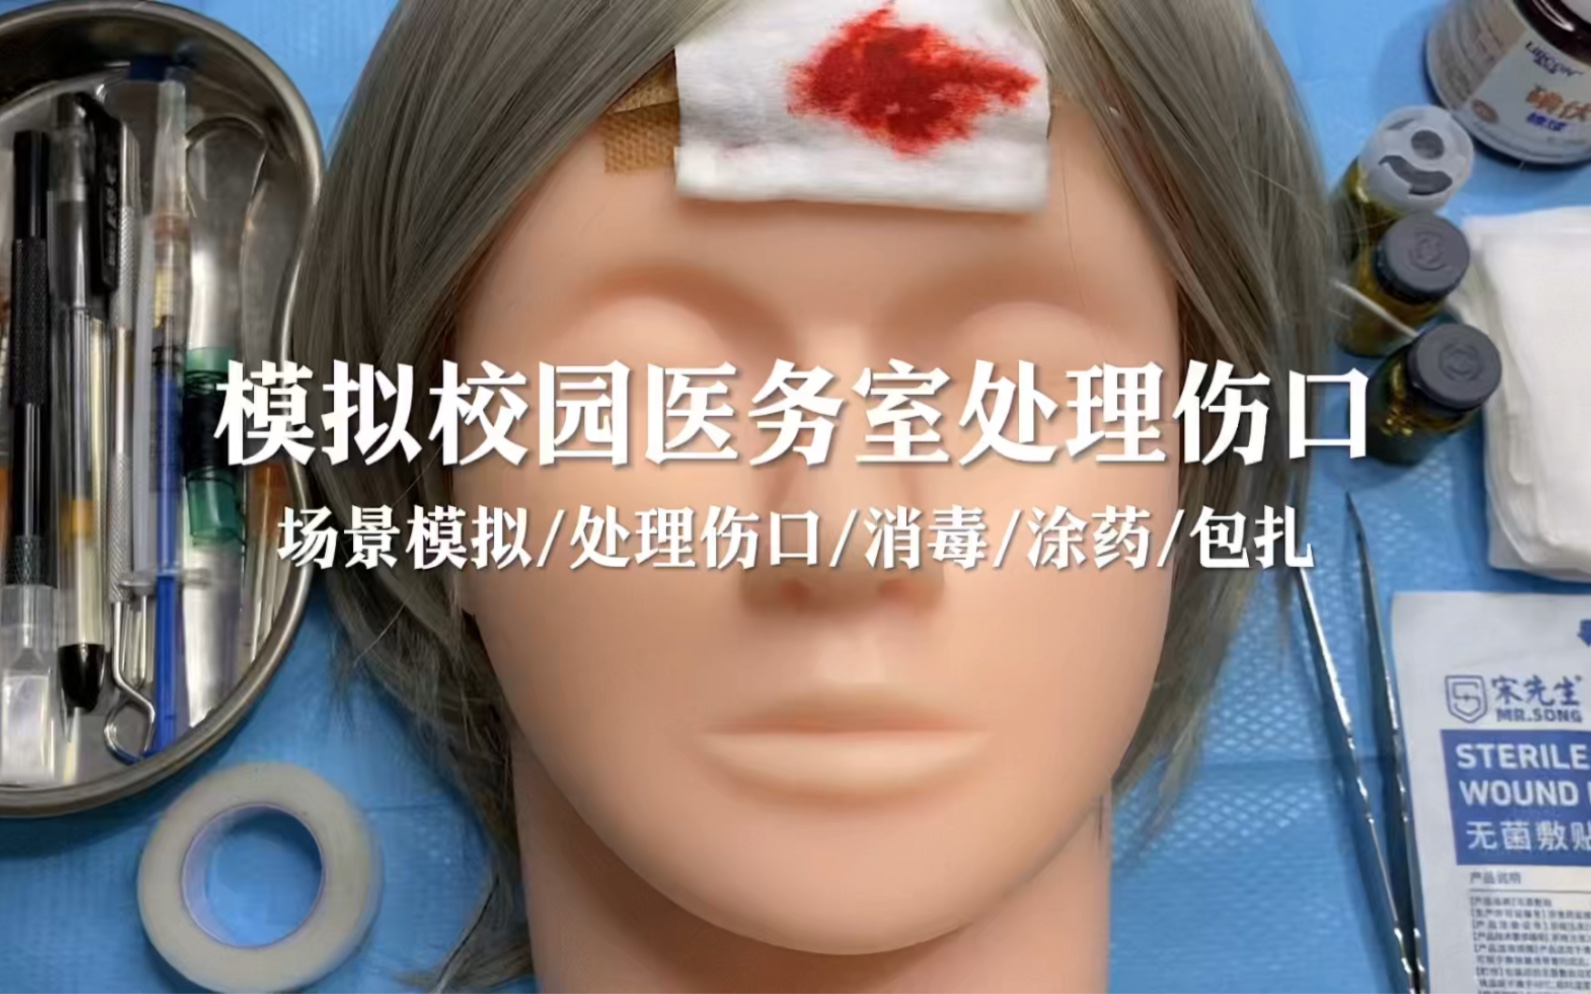 场景模拟 模拟校园医务室处理伤口